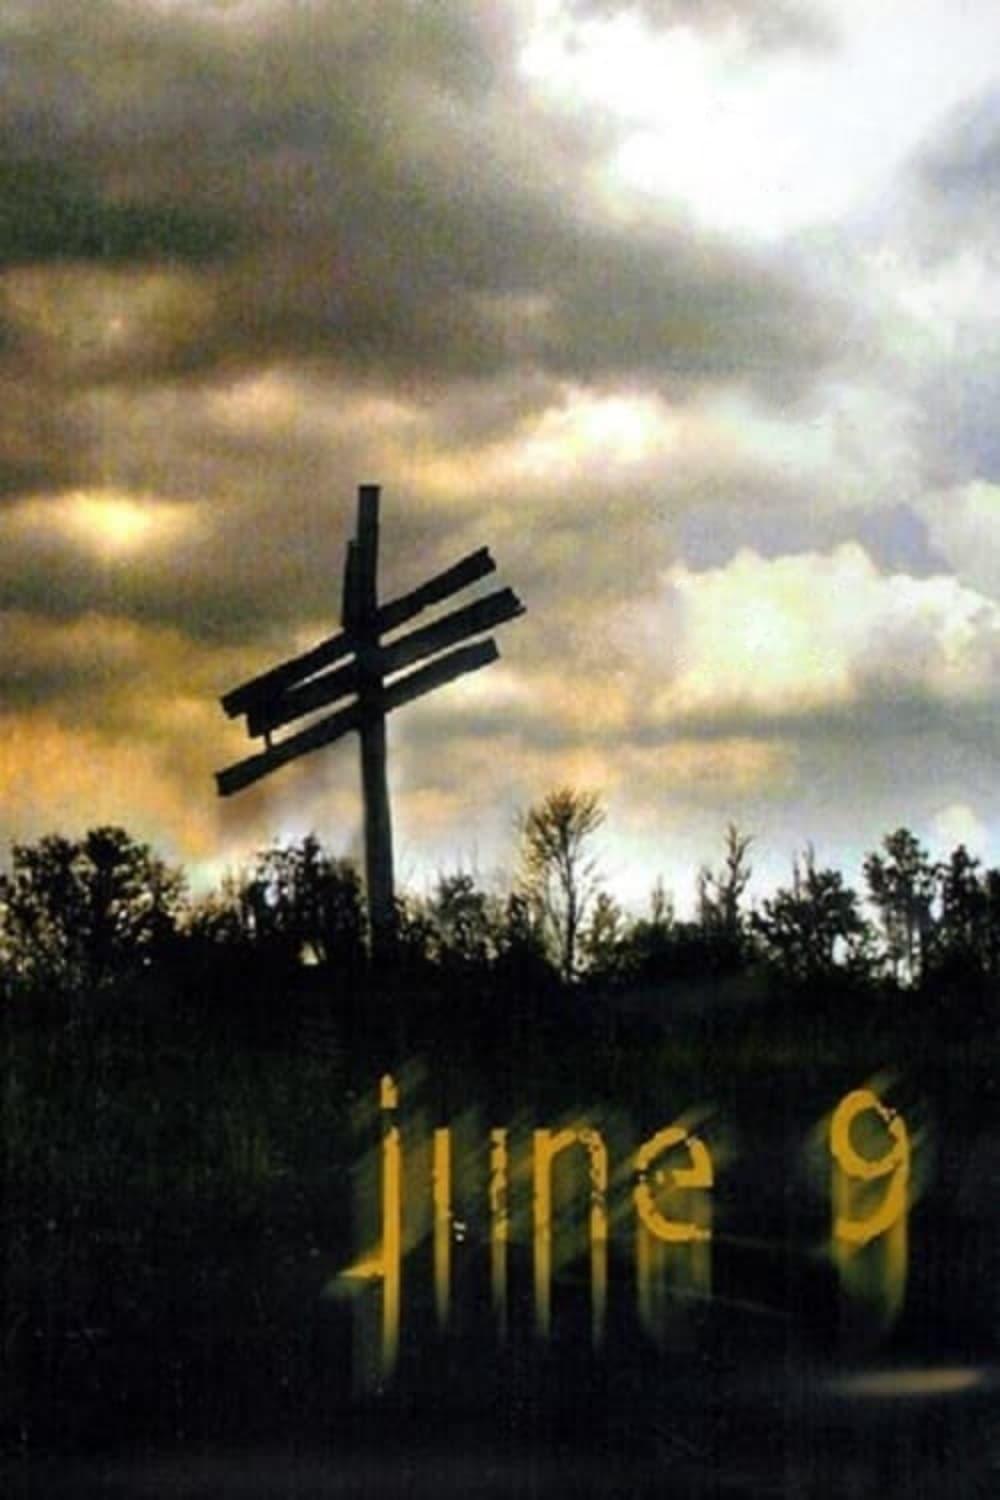 June 9 poster